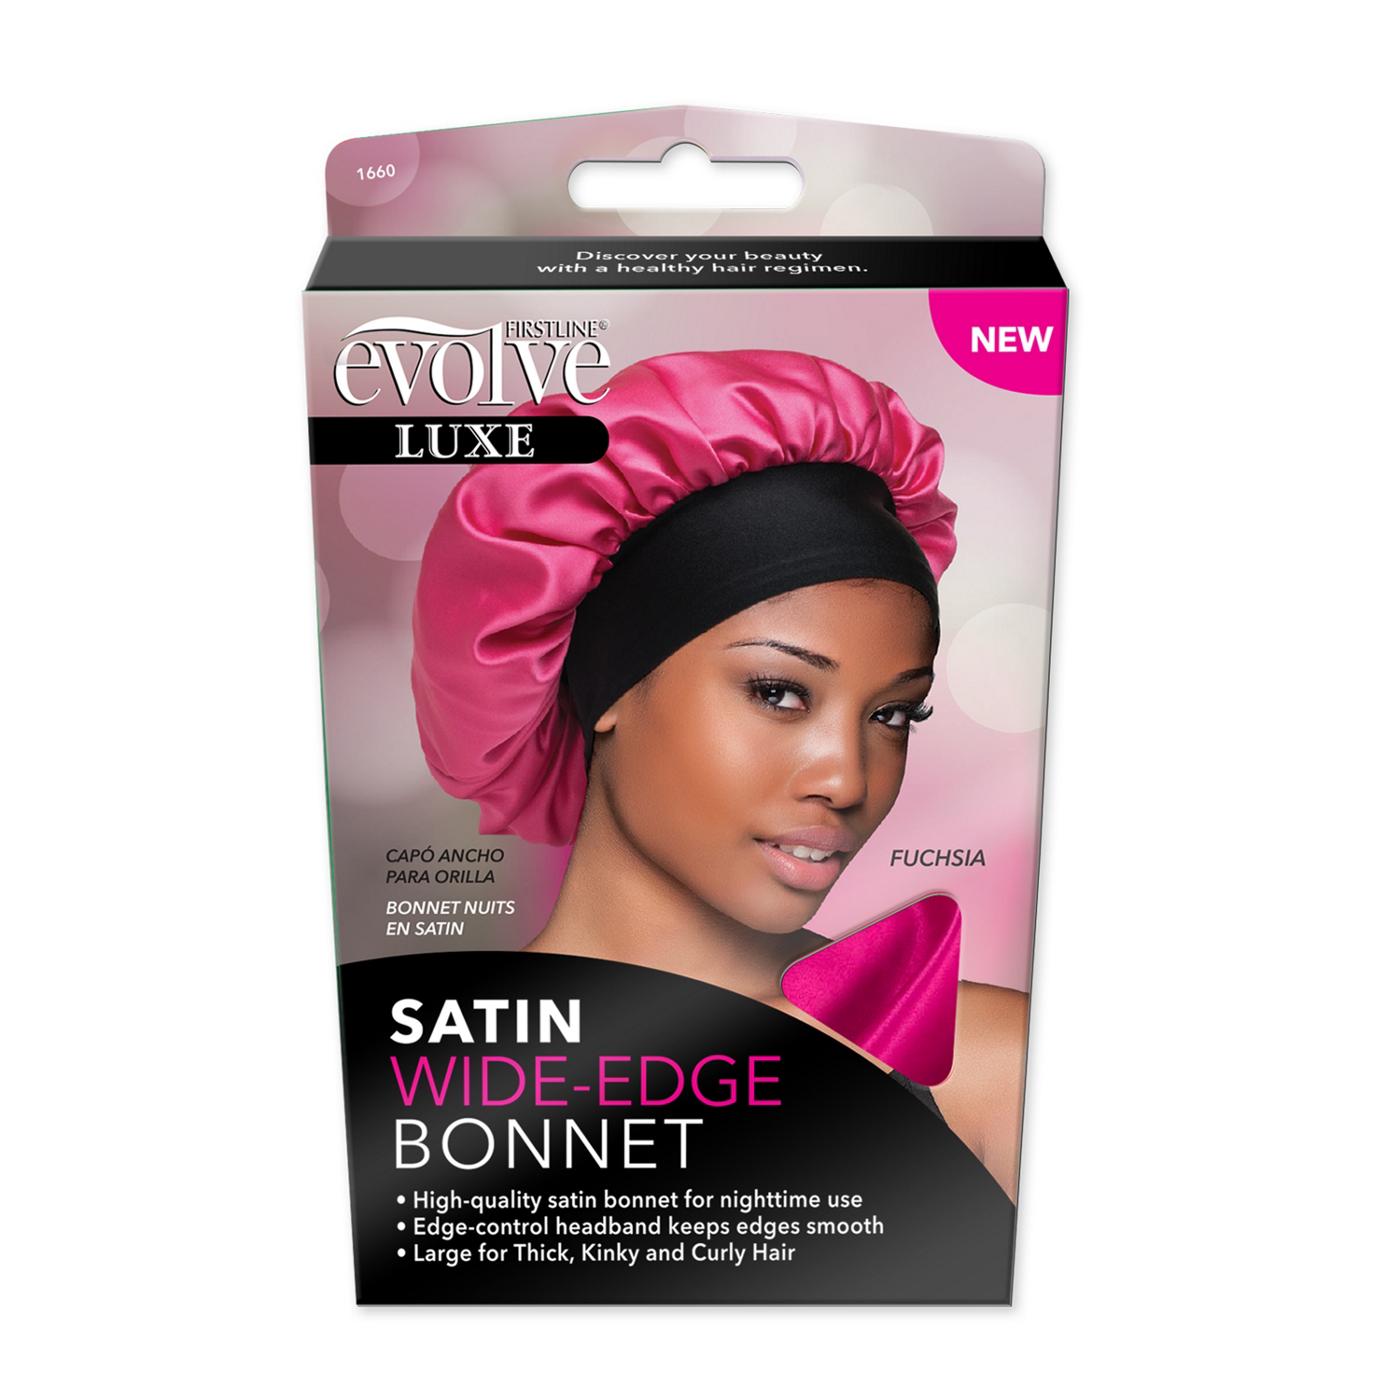 Evolve Satin Wide-Edge Bonnet - Fuchsia - Shop Hair Accessories at H-E-B